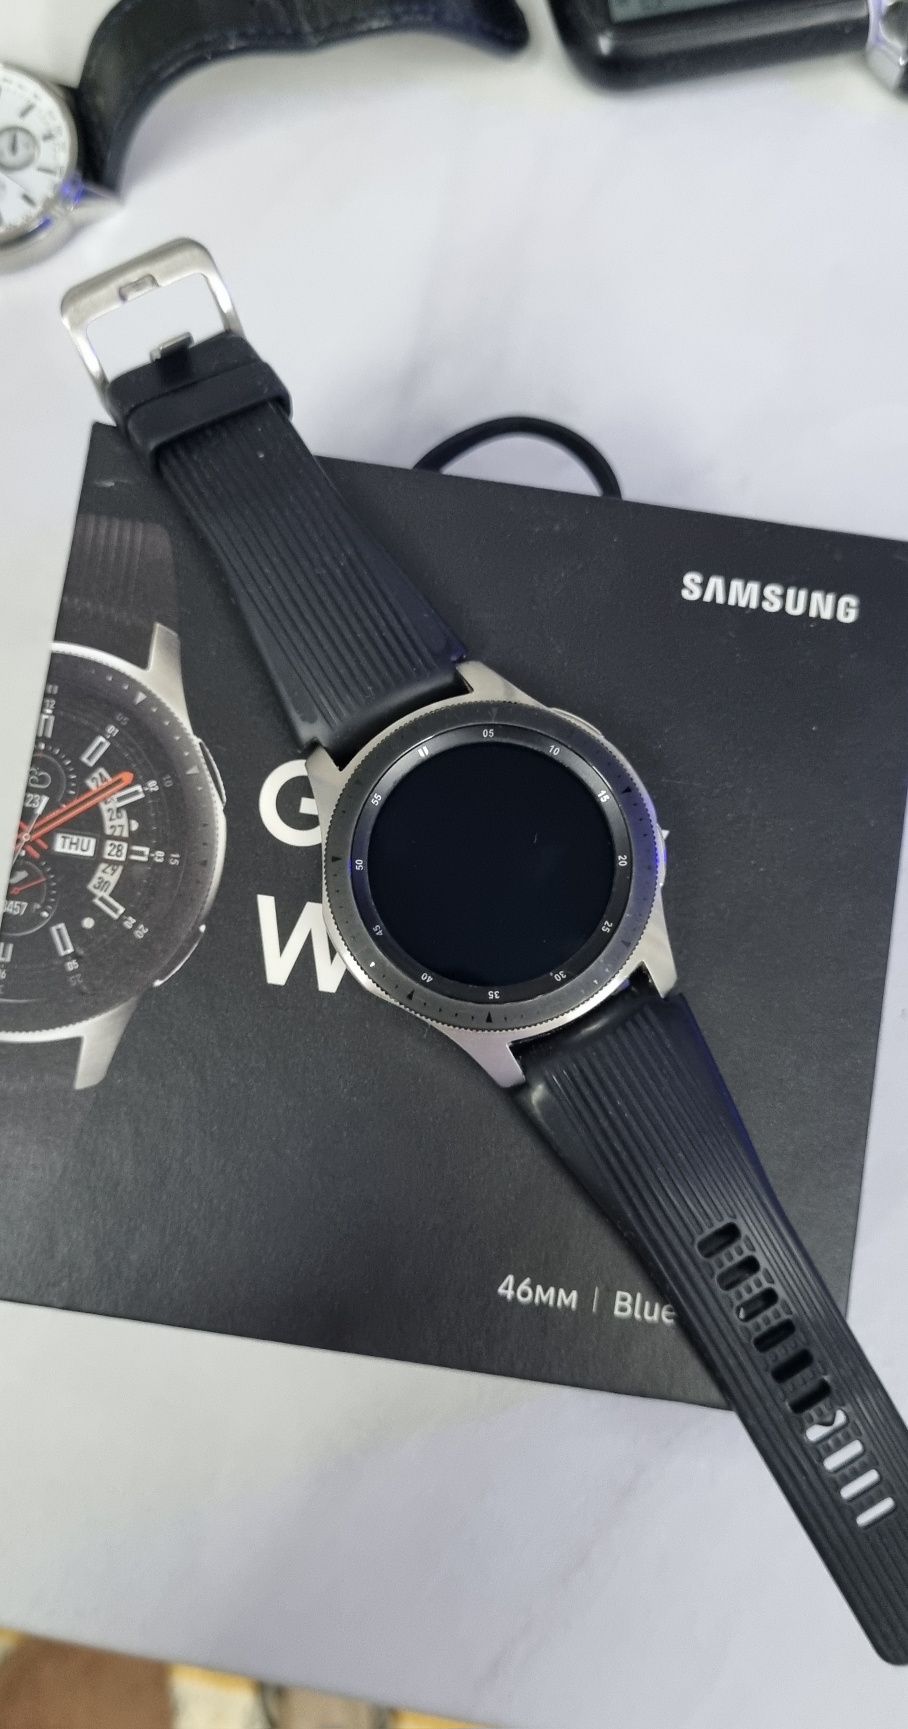 Часы Galaxy Watch 46мм (оригинал). Состояние новых.